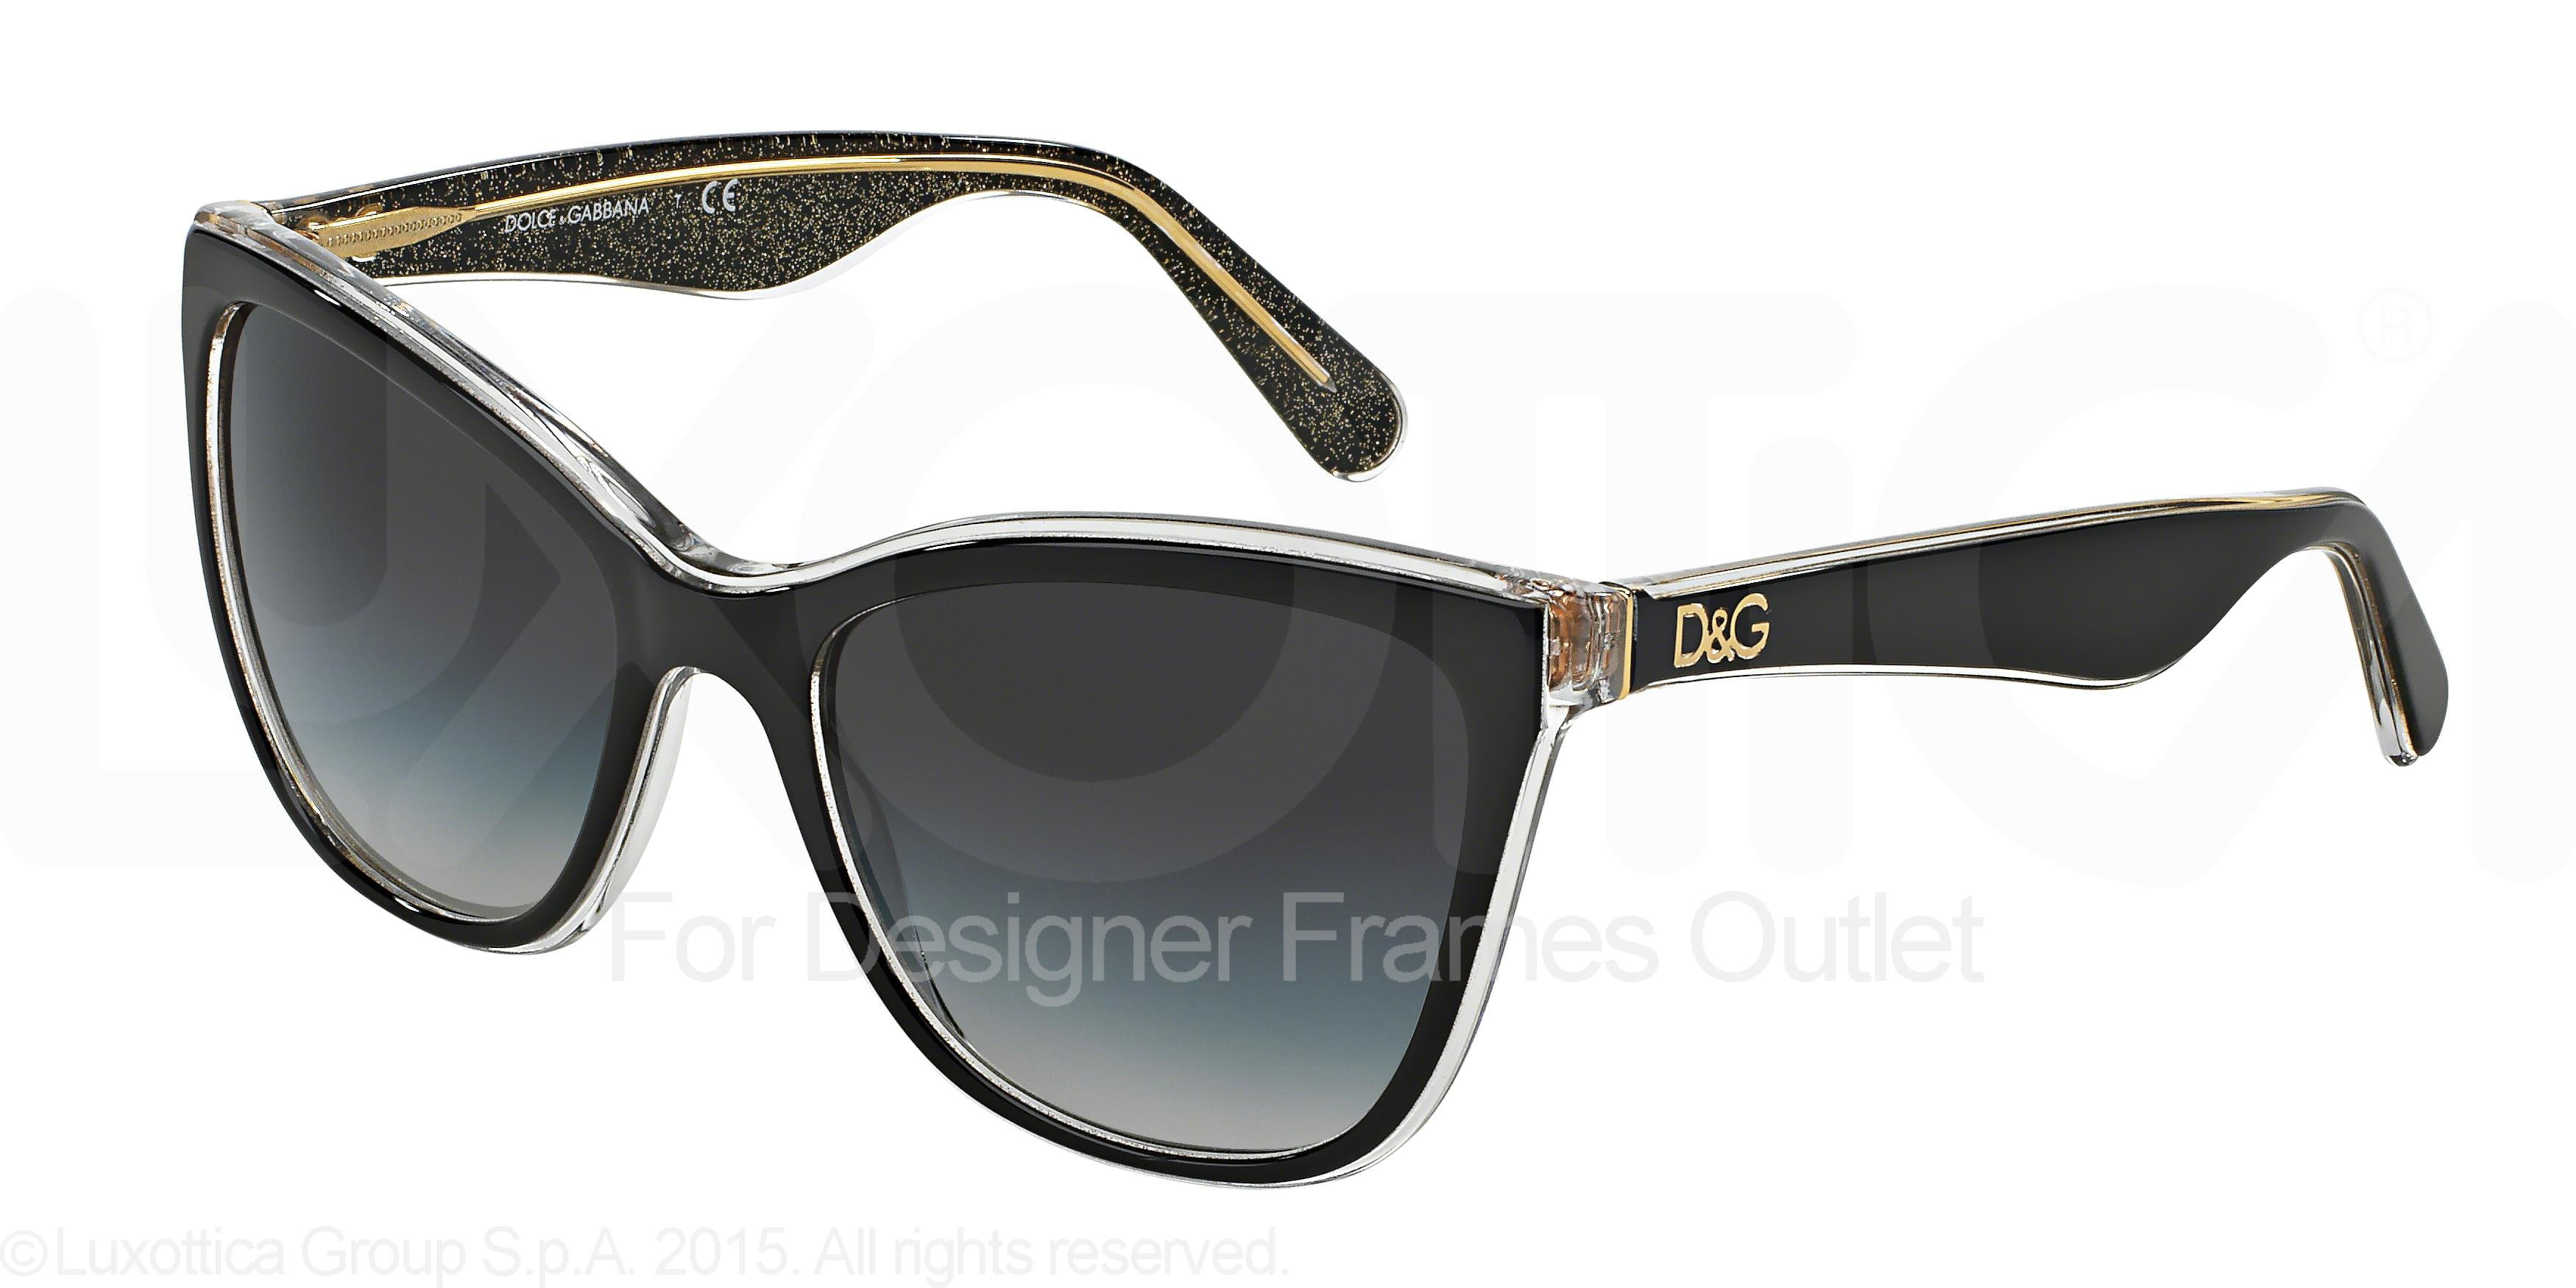 dg 4193 sunglasses